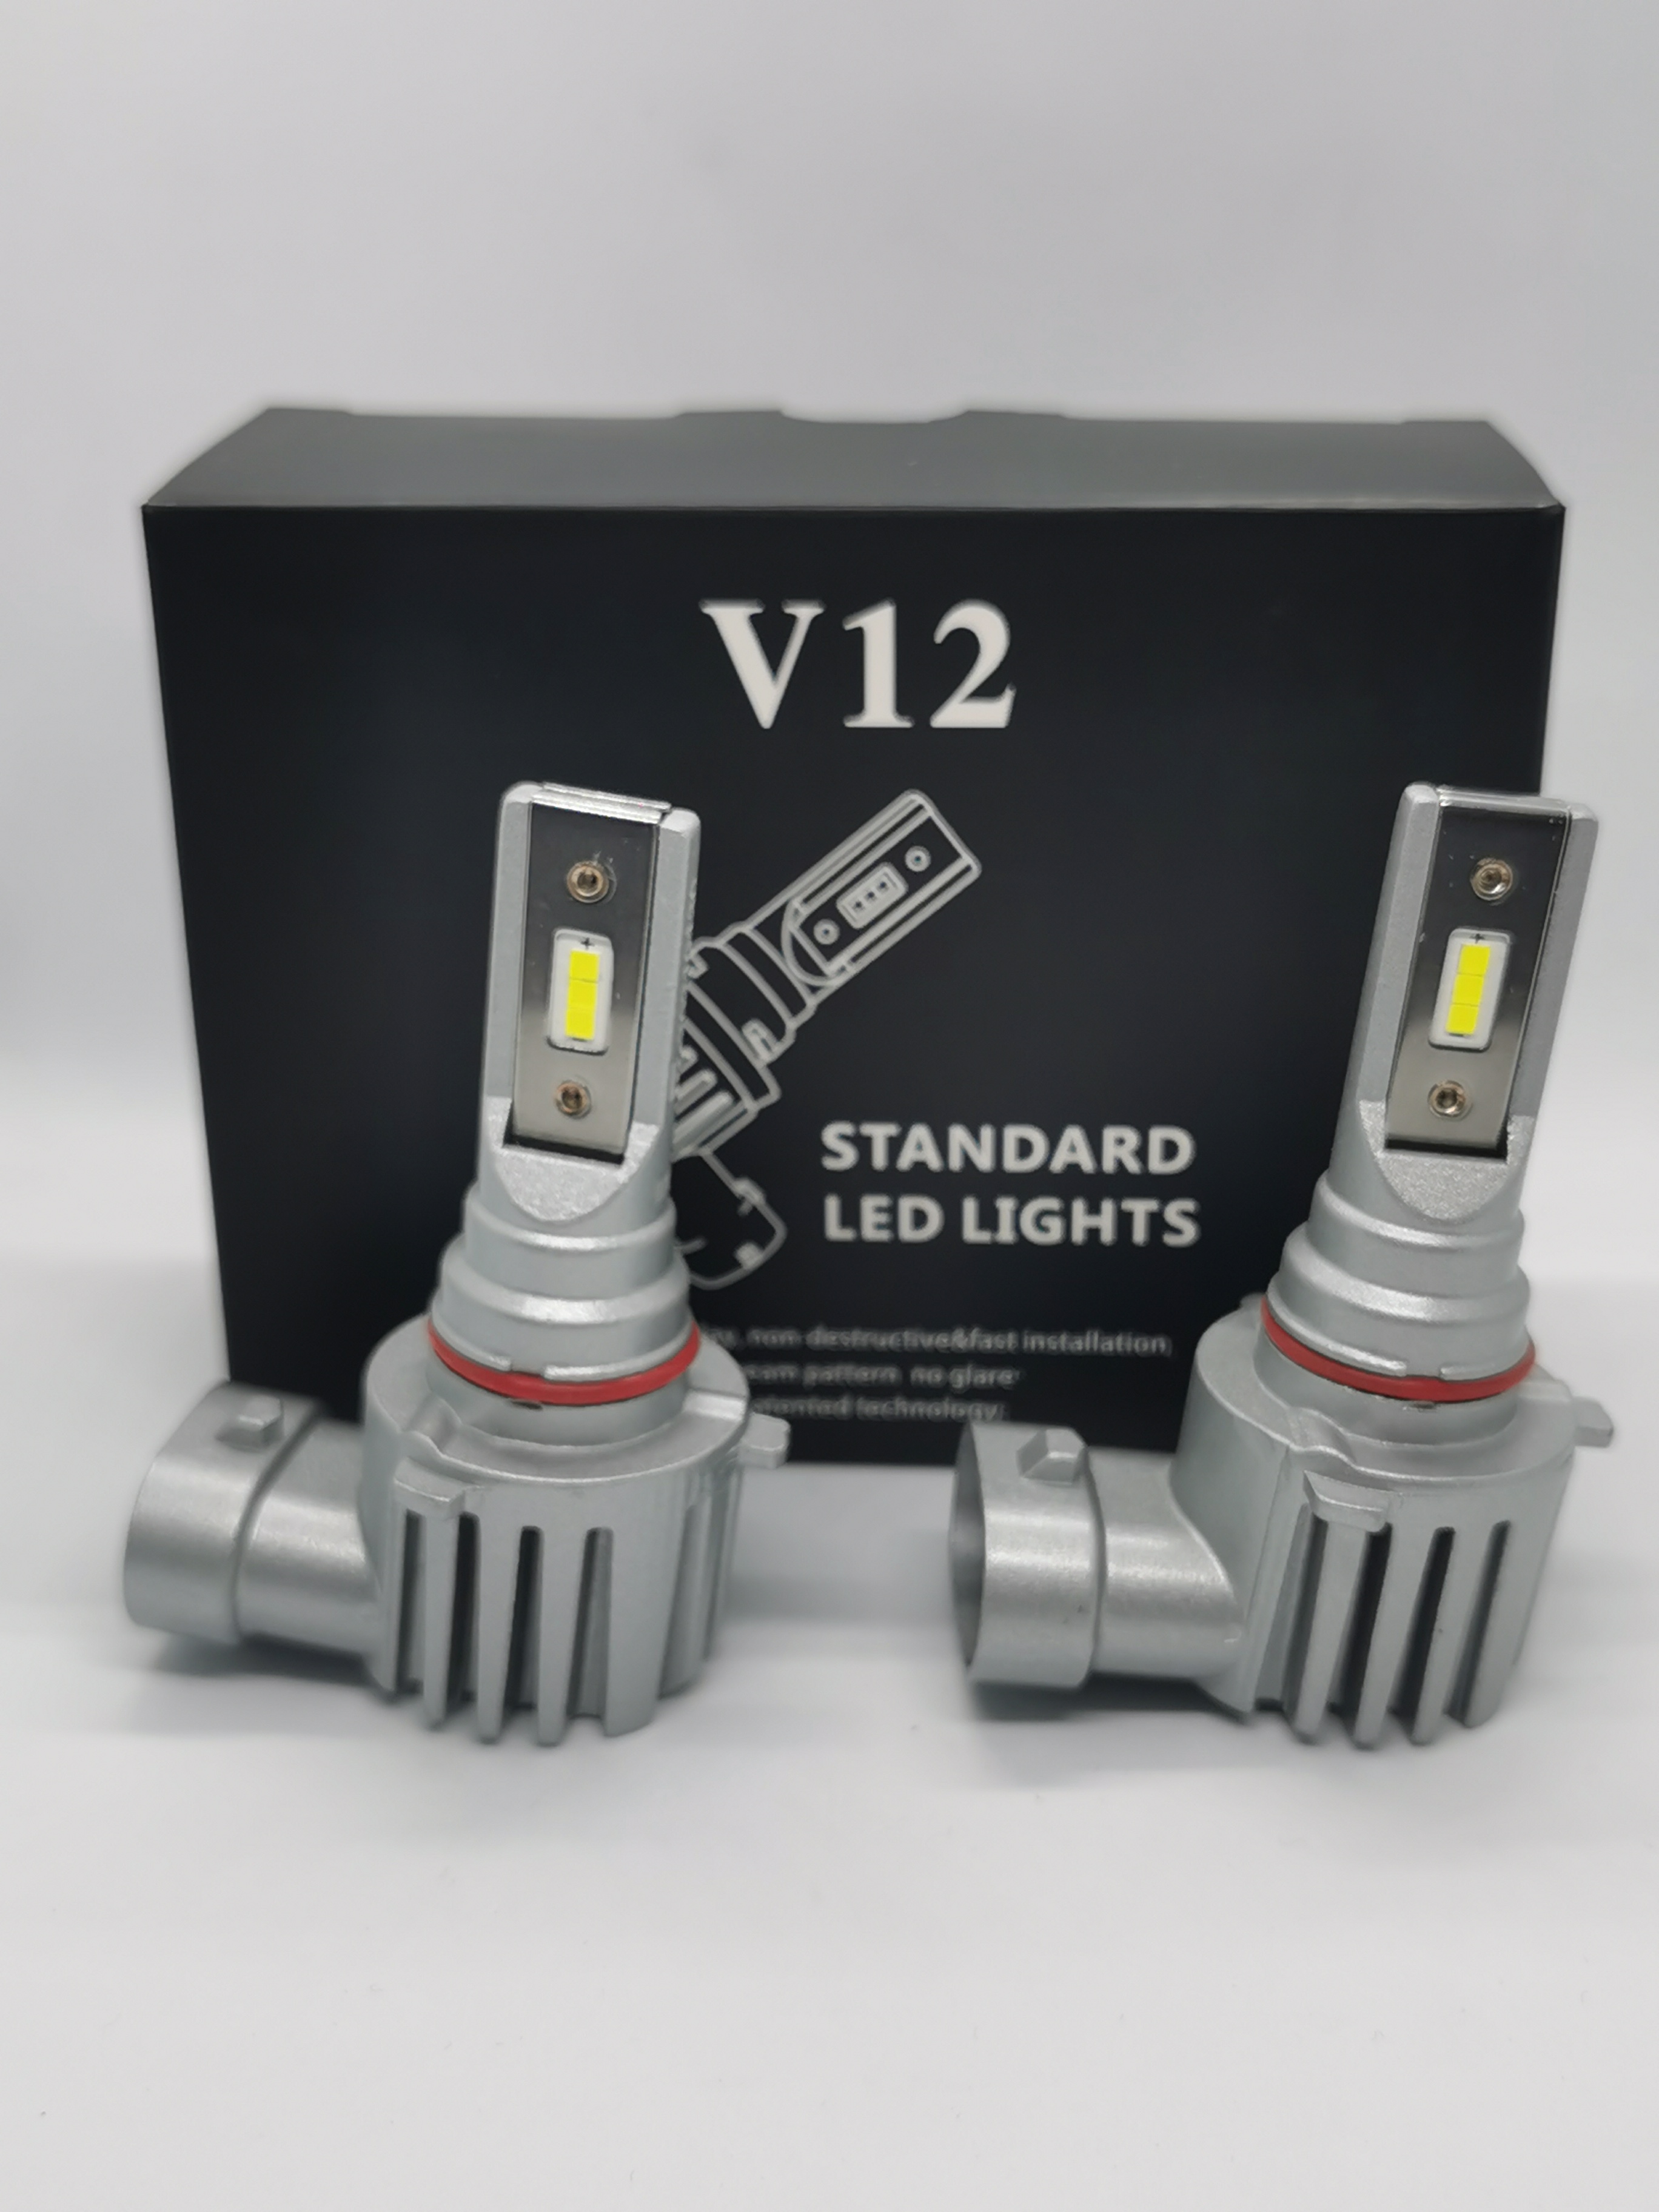 Светодиодные hb3 купить. Лампы v12 Standard led Lights. Н7 vsll12 Standard led Lights 5000к, 3600lm, 12-24v. Vsll12 Standard led Lights. Vsll12 Standard led Lights 5000к,.